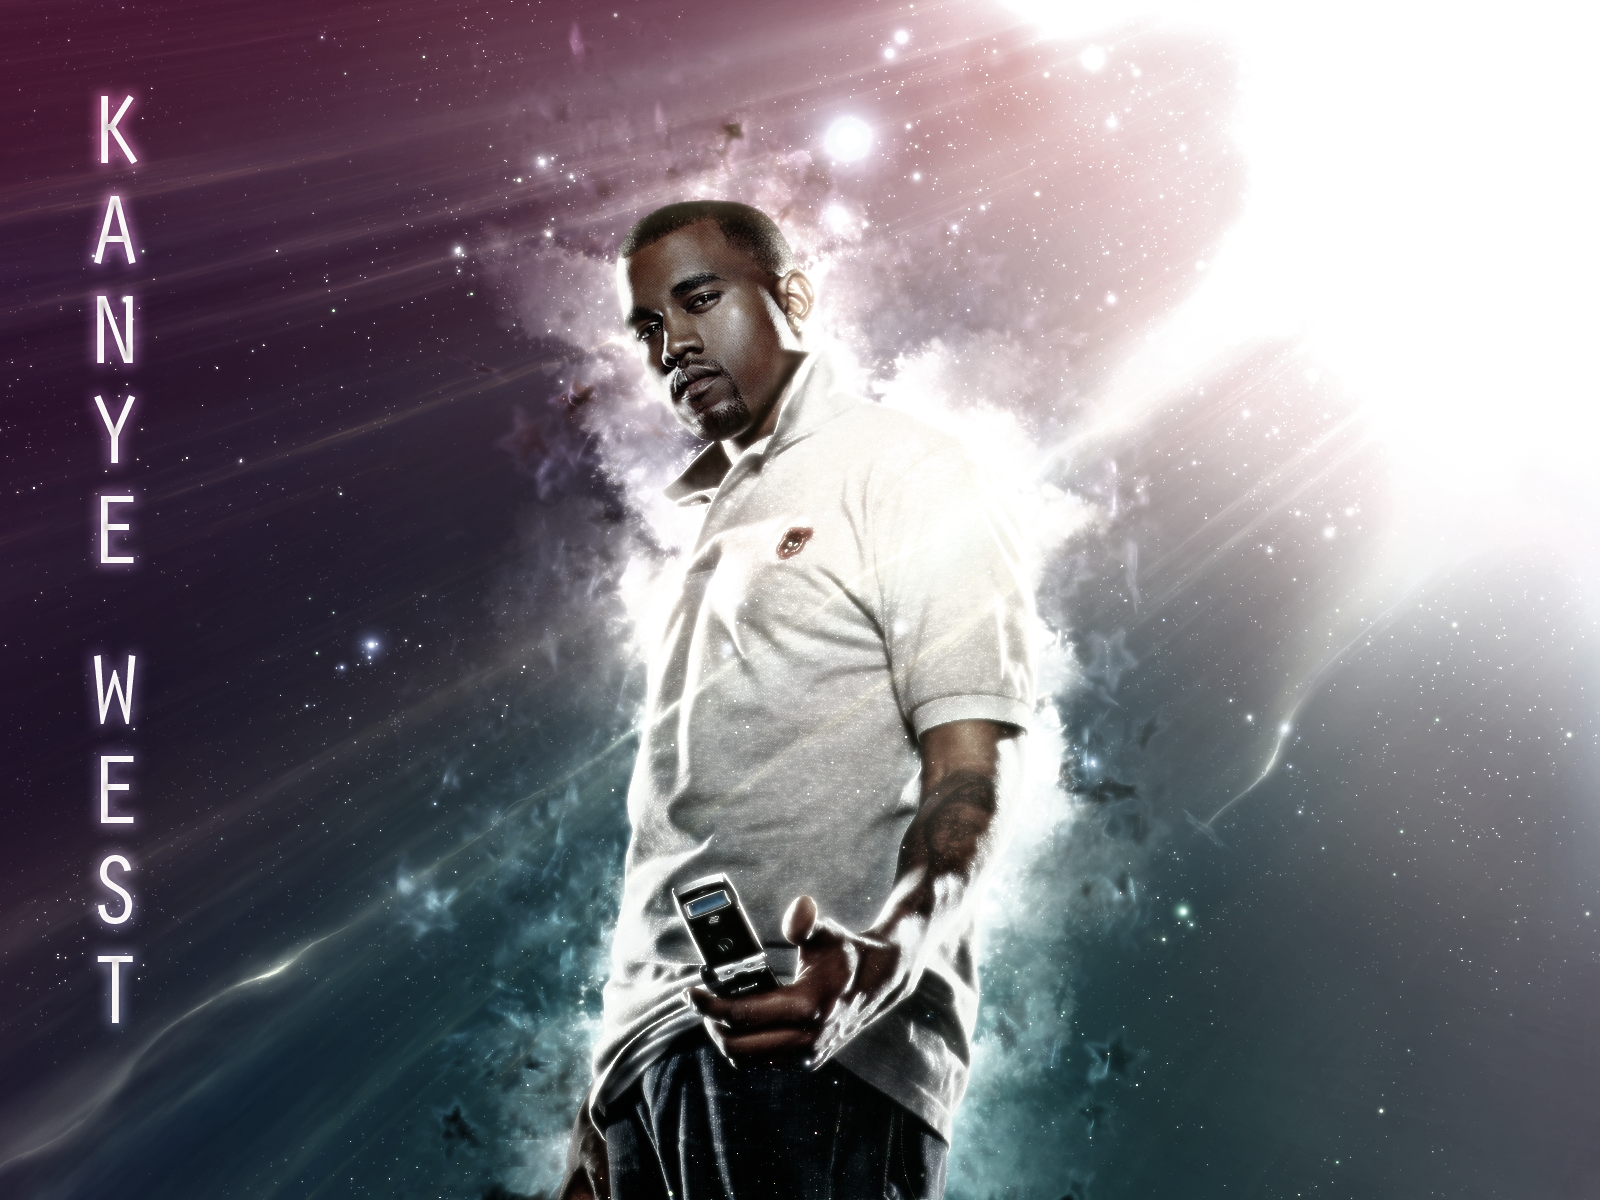 Kanye-West-2013.png